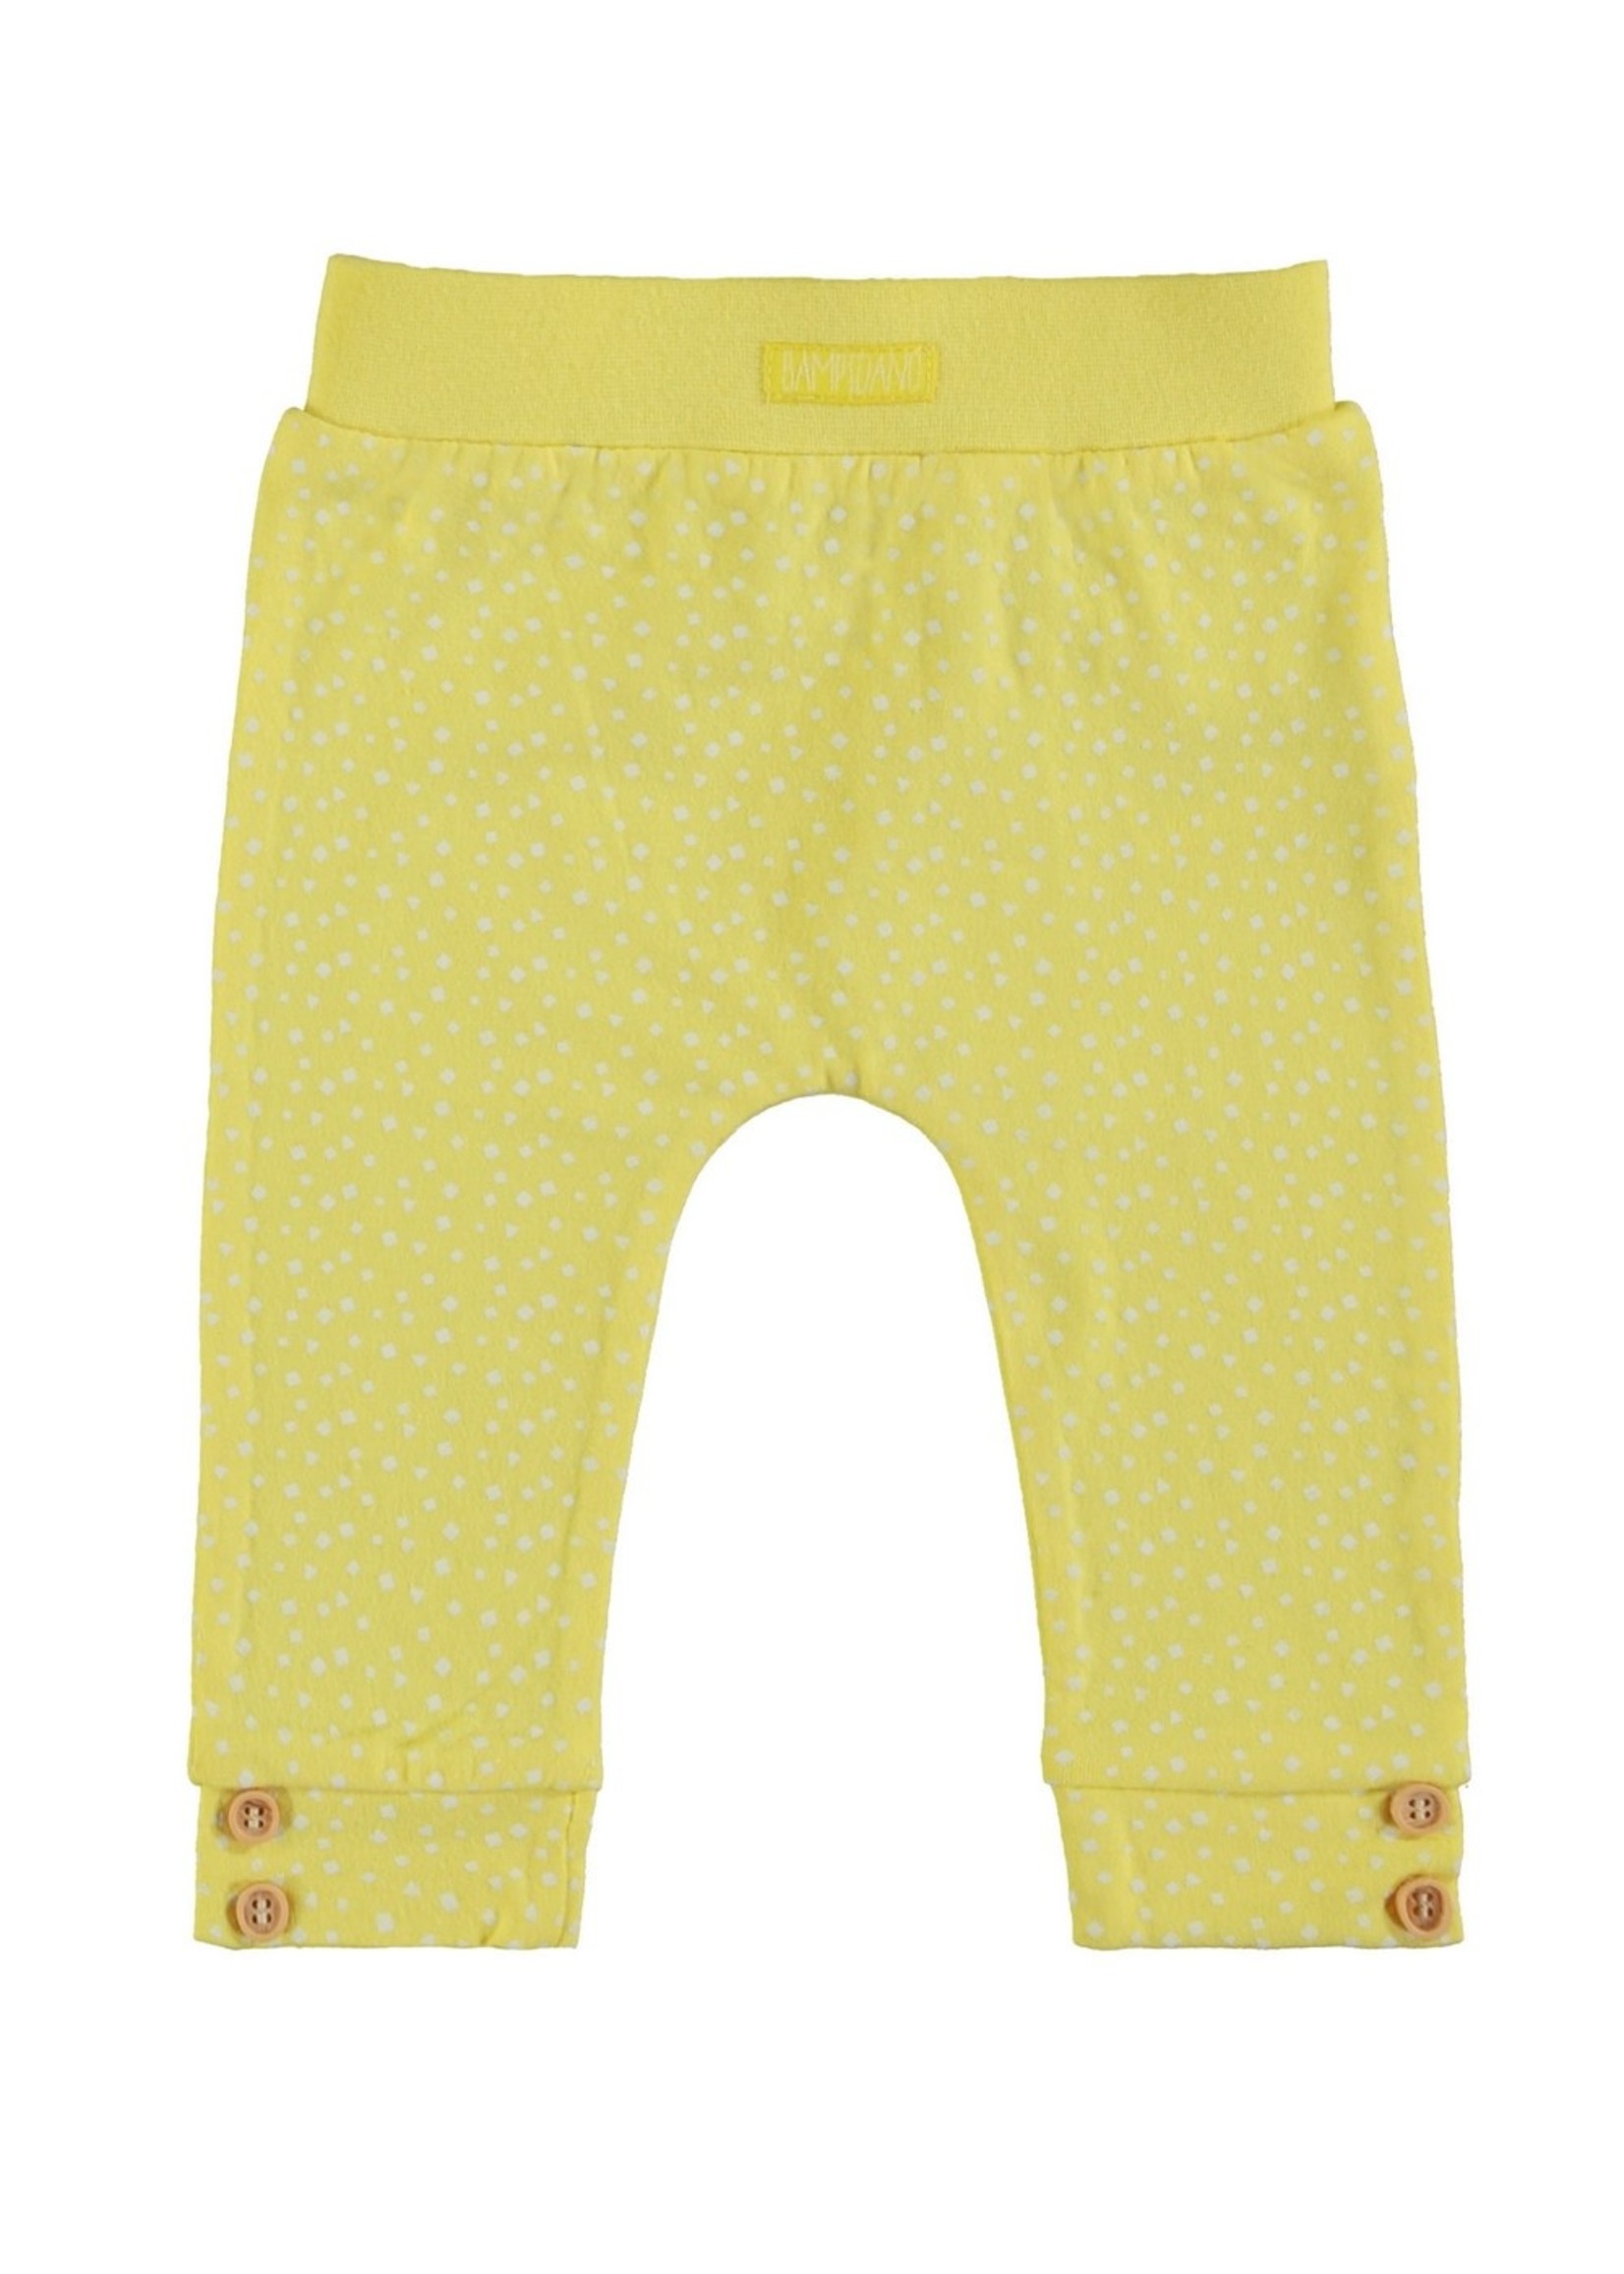 Bampidano New Born trousers allover print, yellow allover